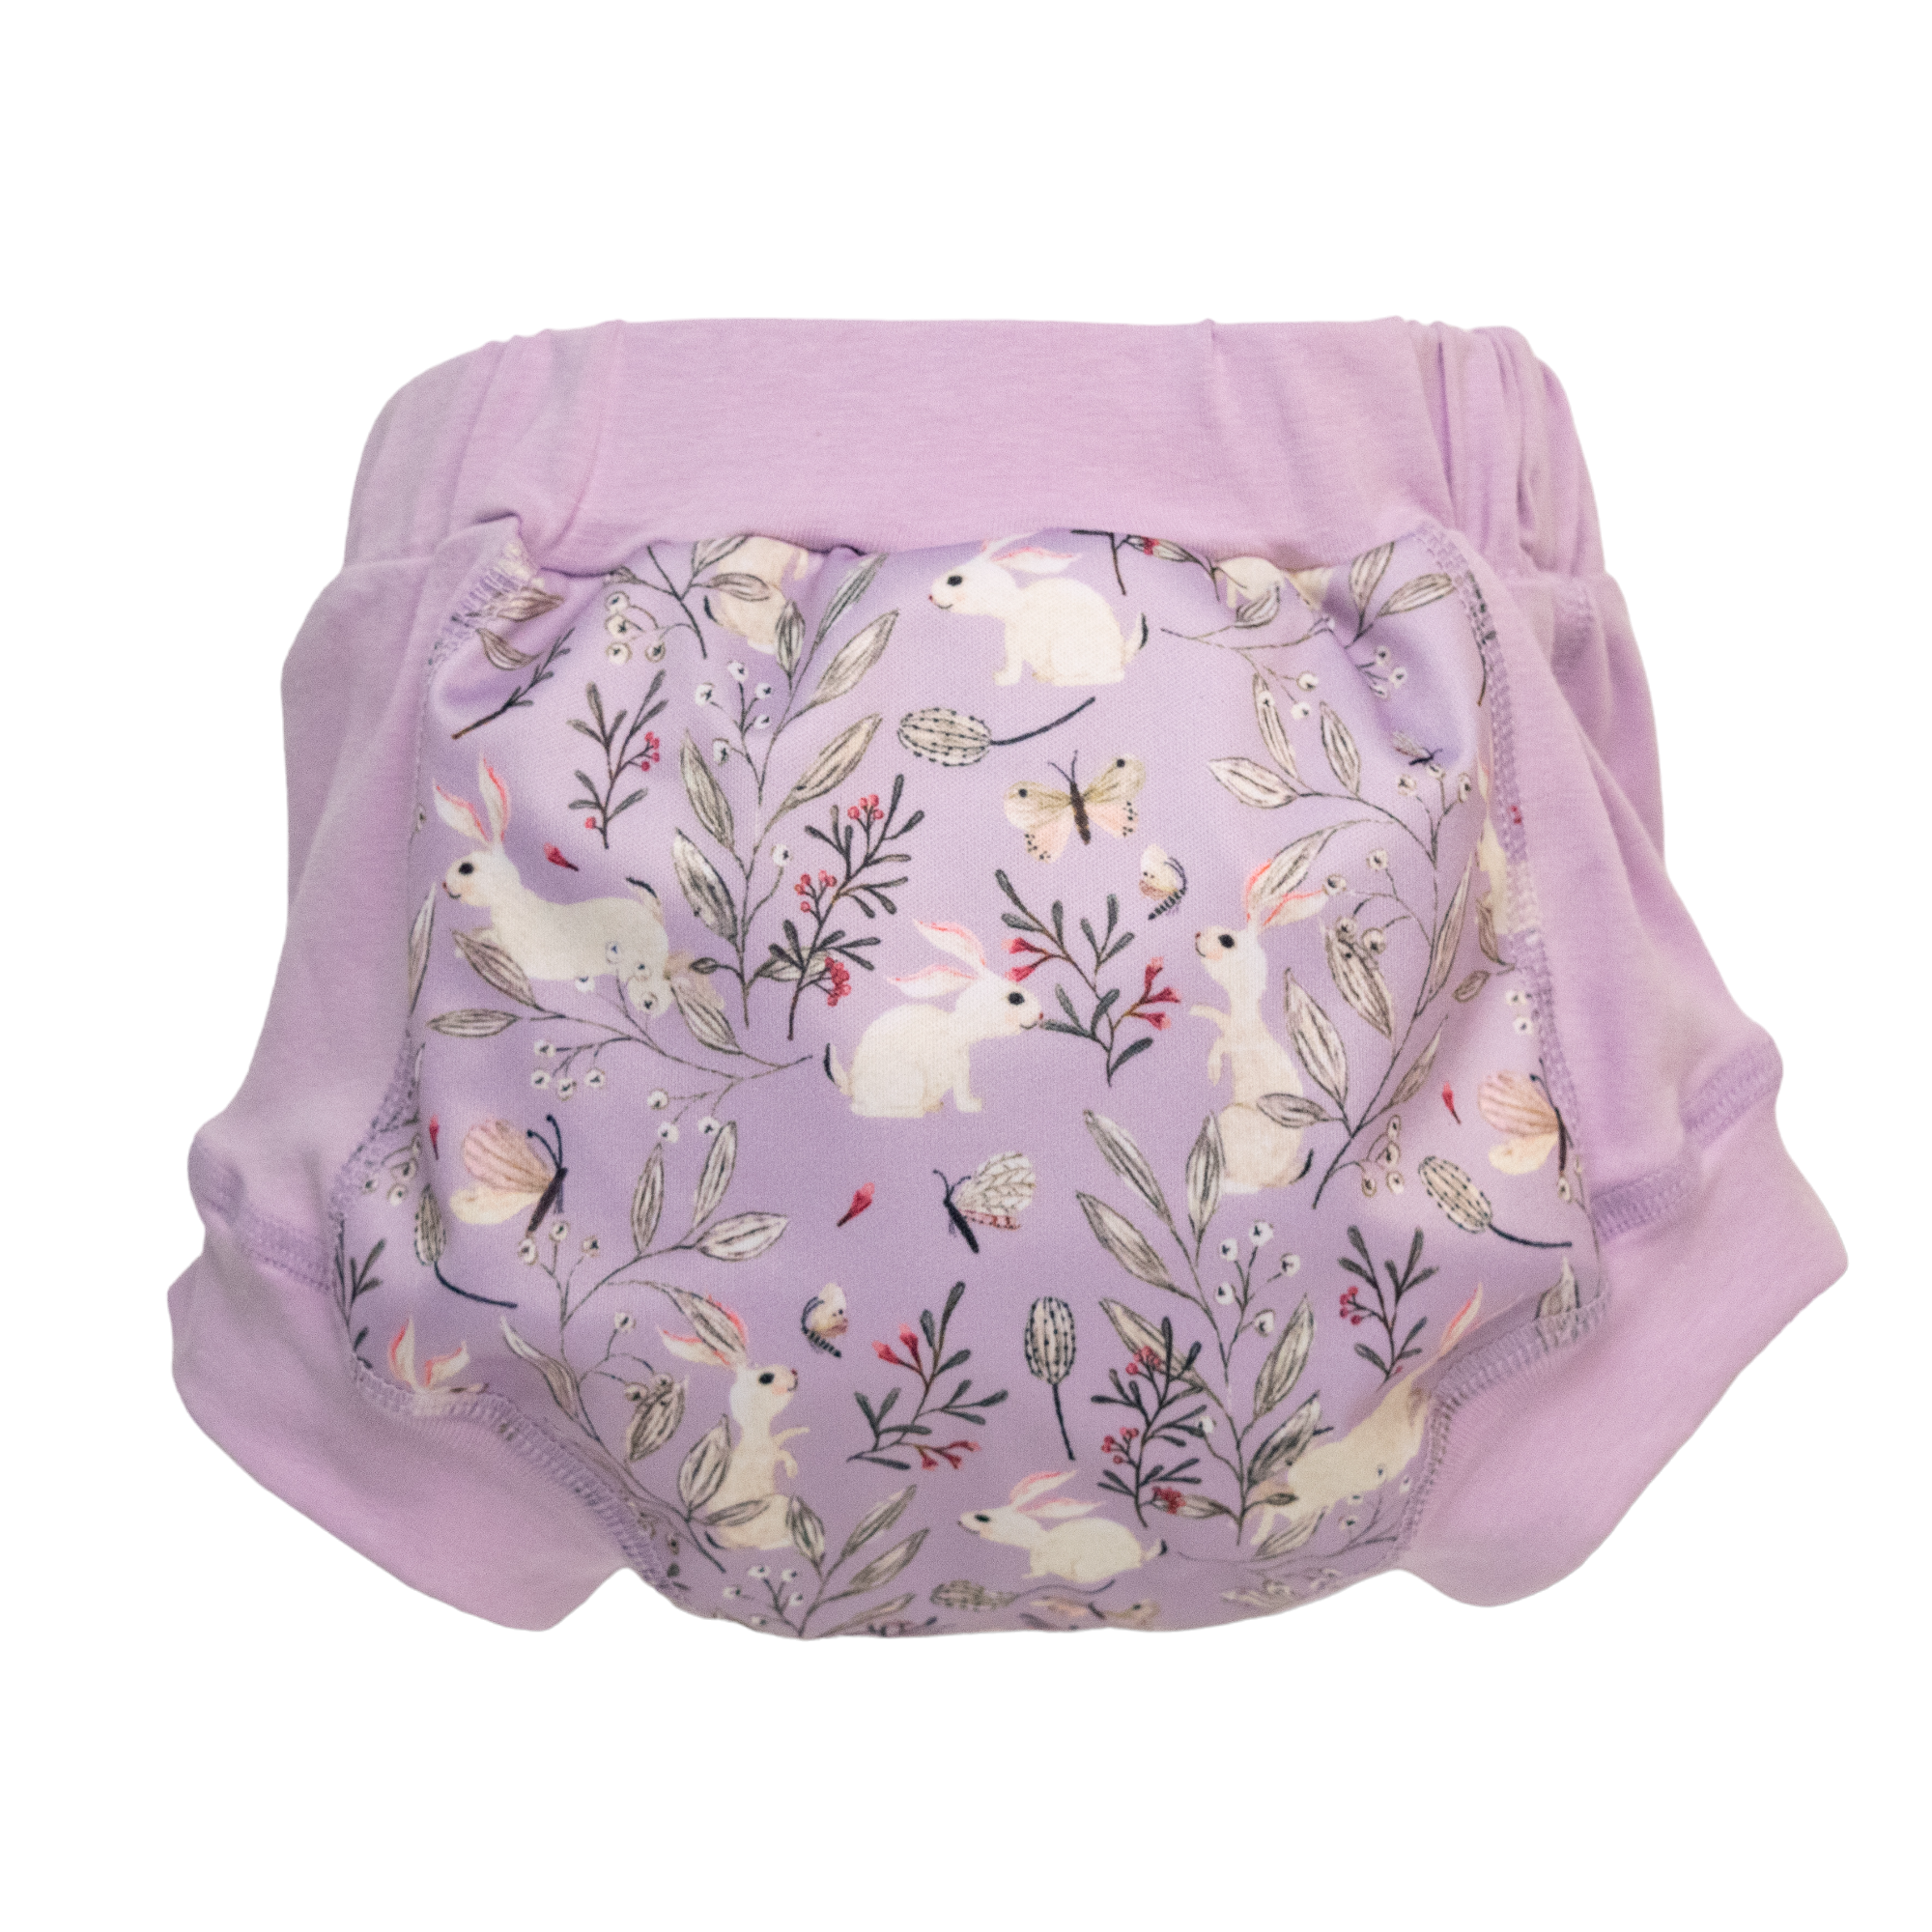 Wee Pants Training Undies - Lilac Bunnies